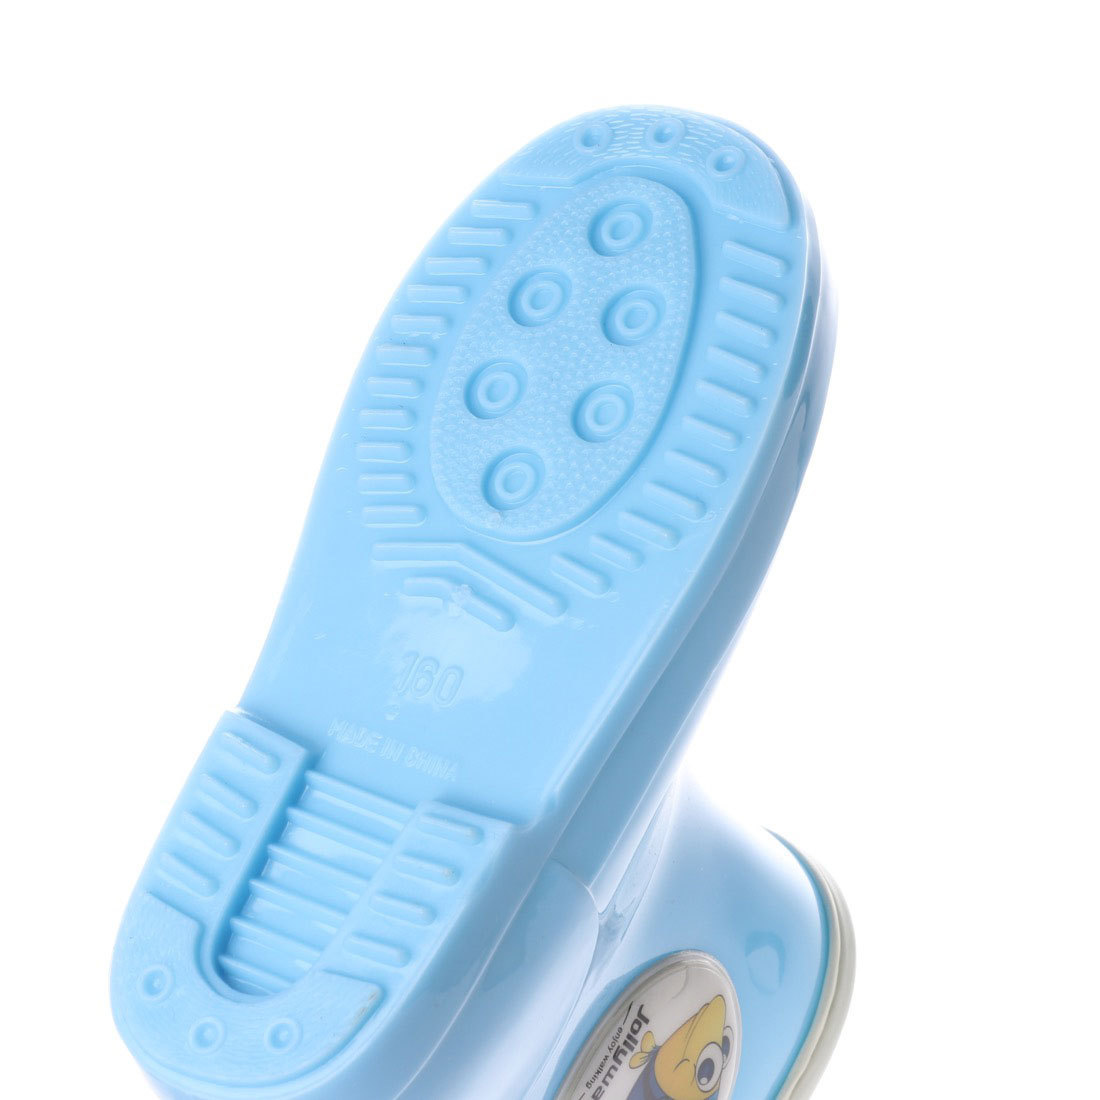 新品・送料無料！！『jwq01-BLU-160』男の子/女の子兼用・キャラクター付きレインシューズ・子供用長靴・雨靴・雨具